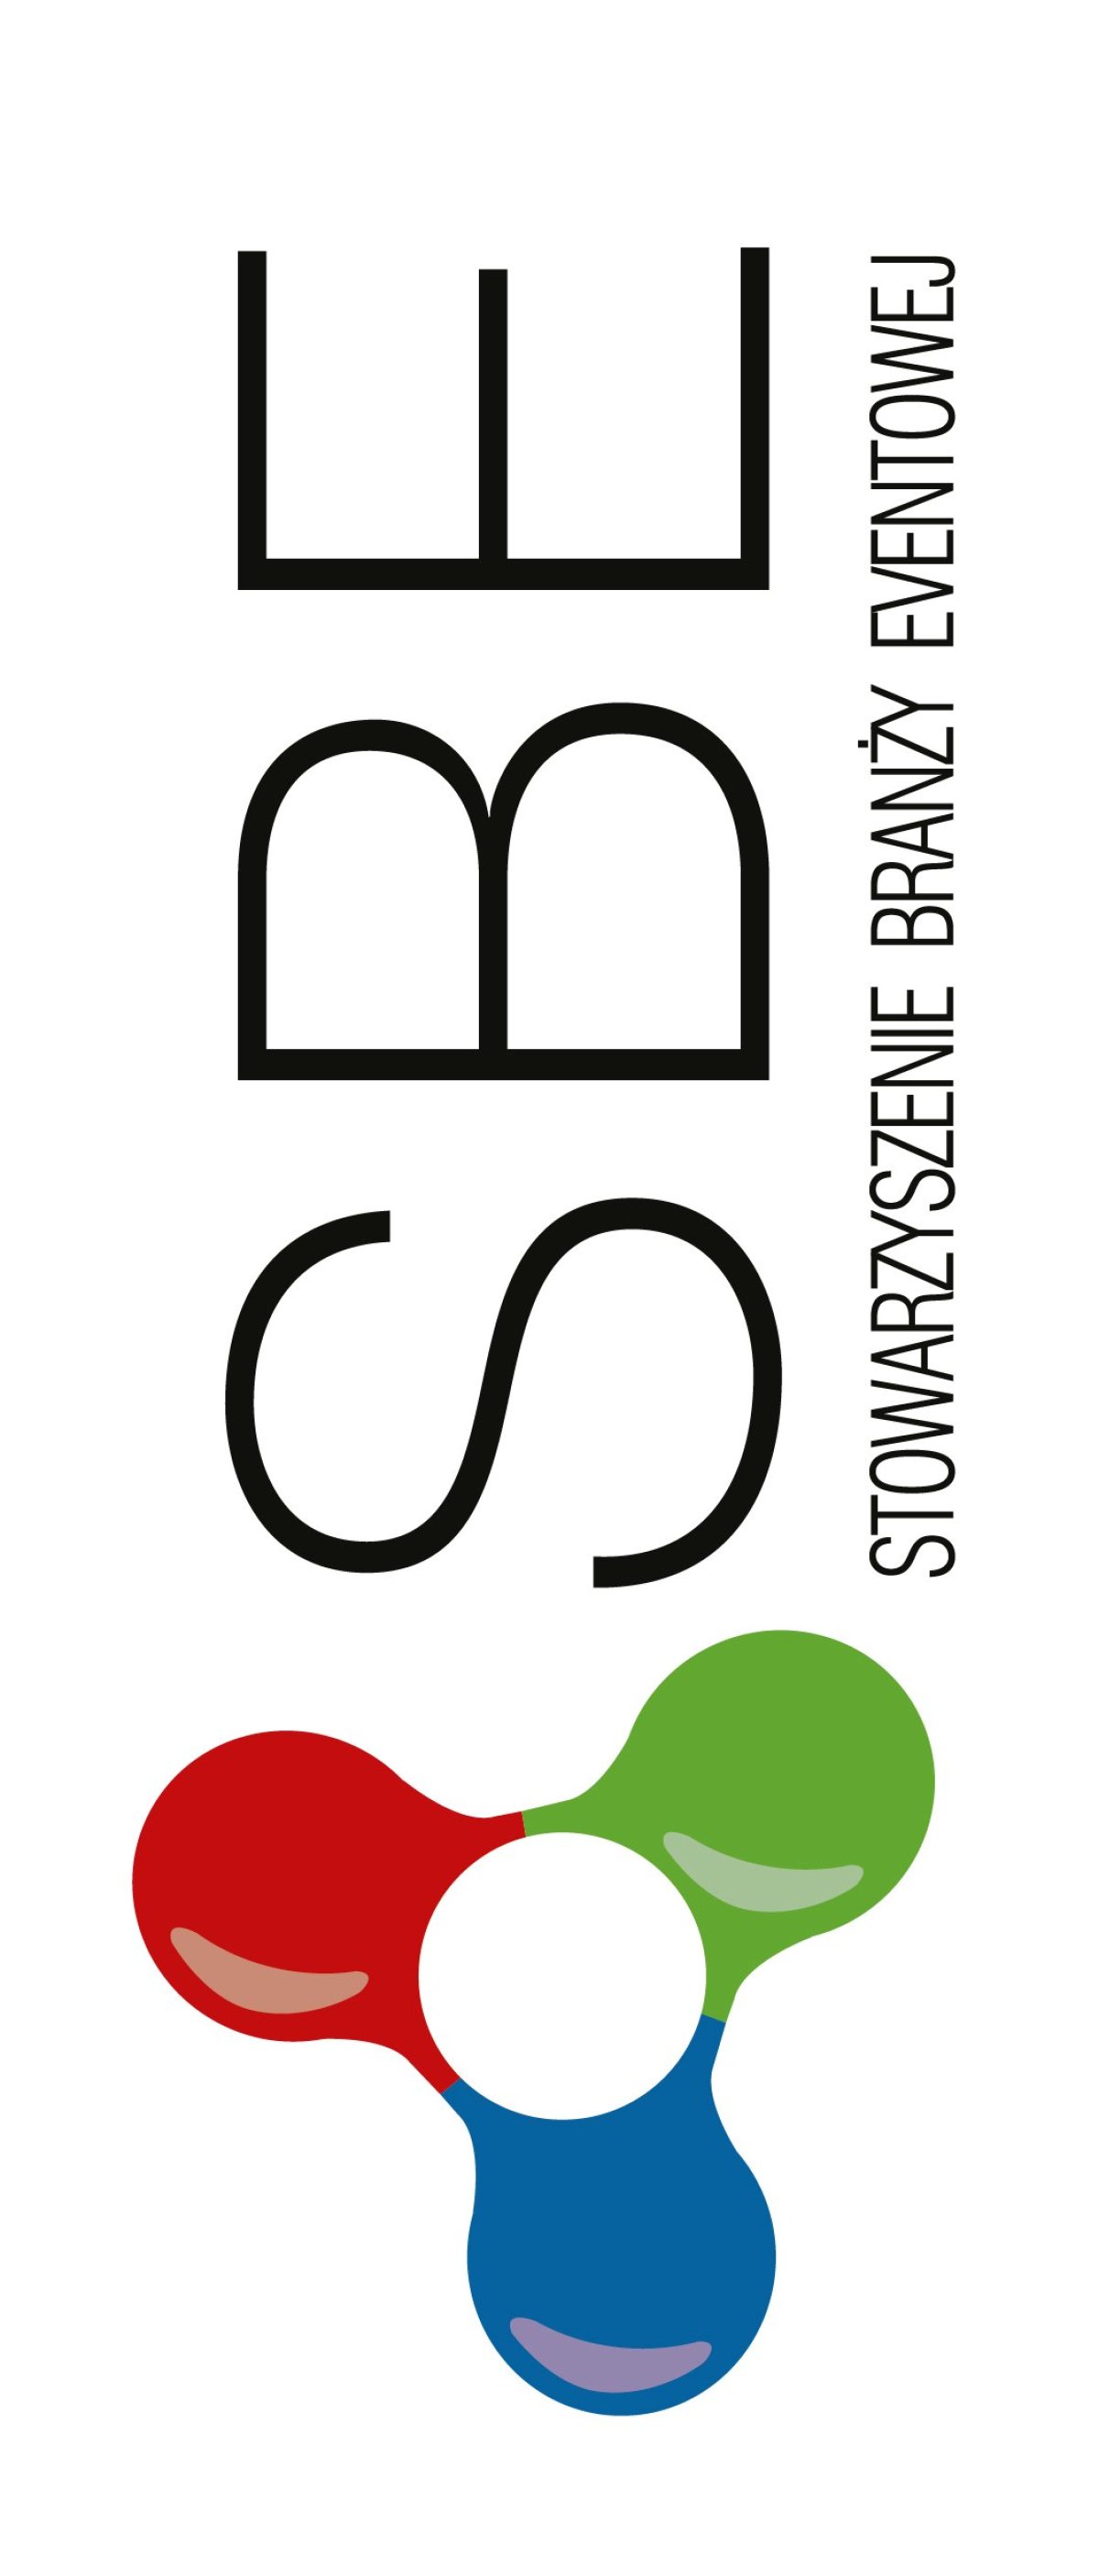 Agencja eventowa FSWO Sp. z o.o. wyróżniona przez Poland Convention Bureau